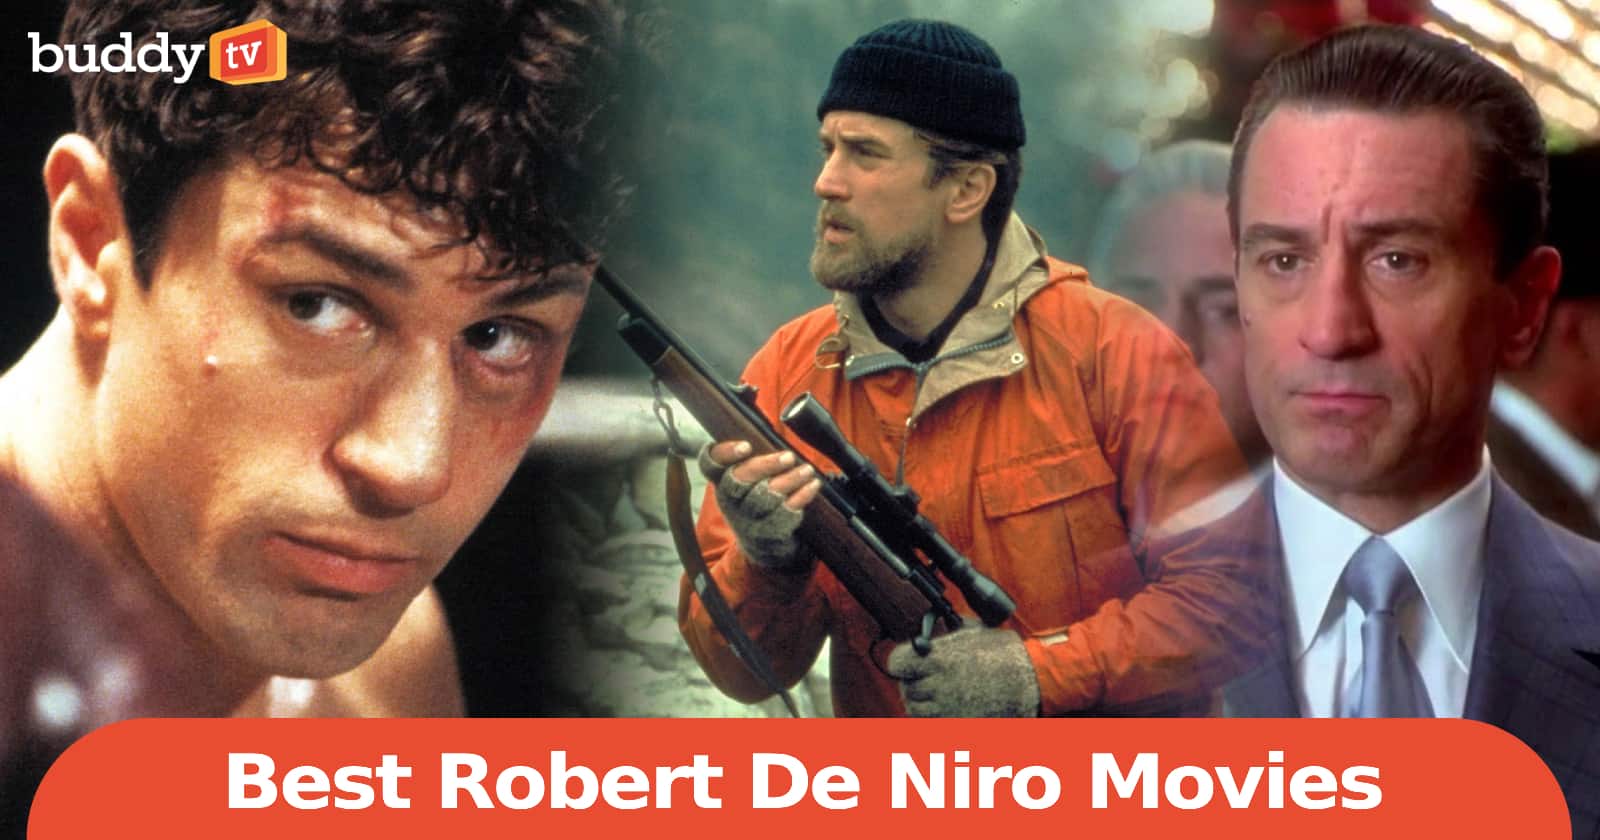 10 Best Robert De Niro Movies, Ranked by Viewers